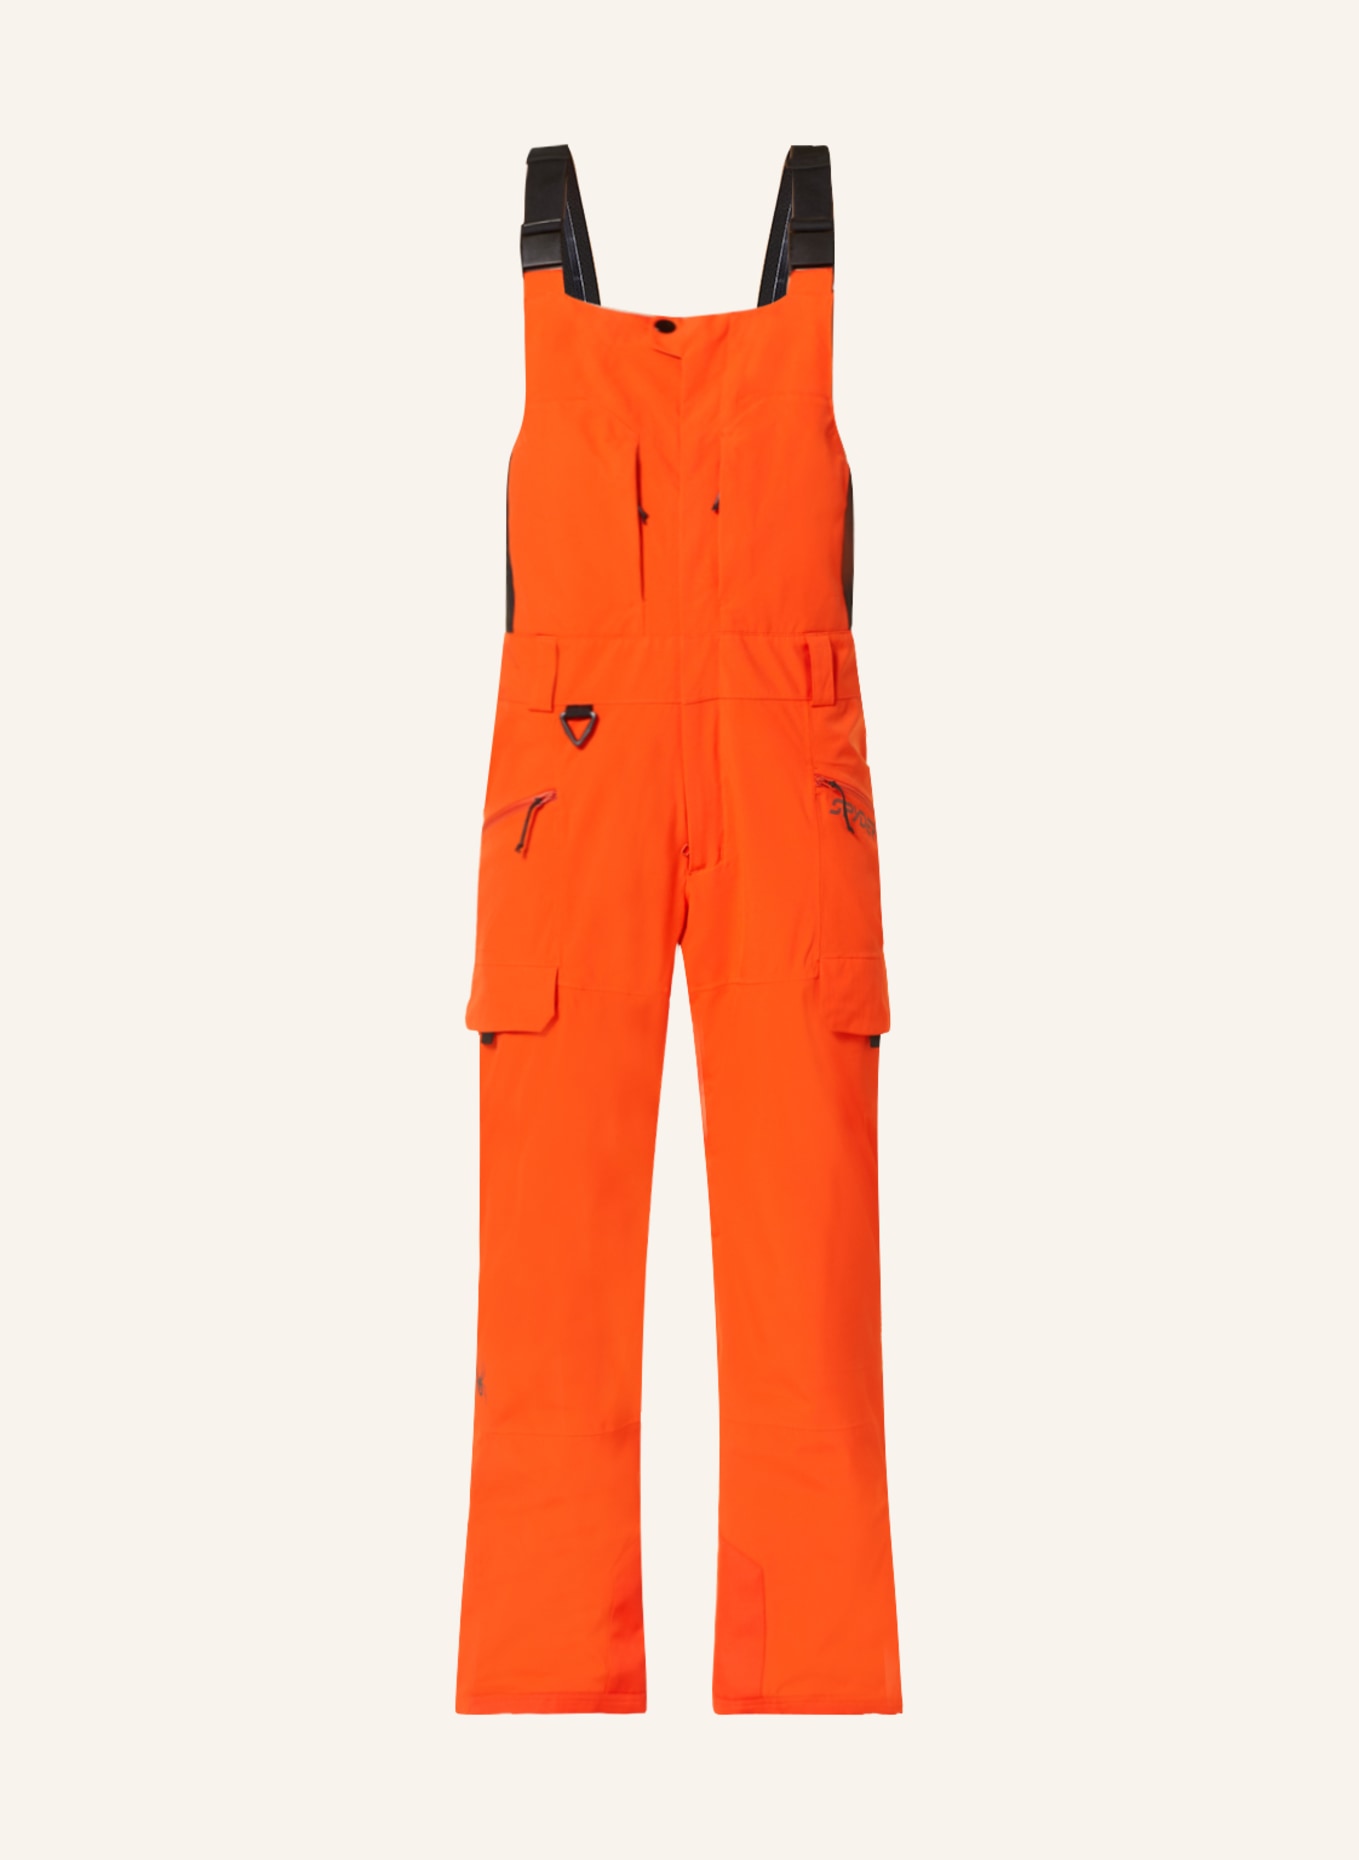 SPYDER Ski pants TERRAIN BIB in orange/ black